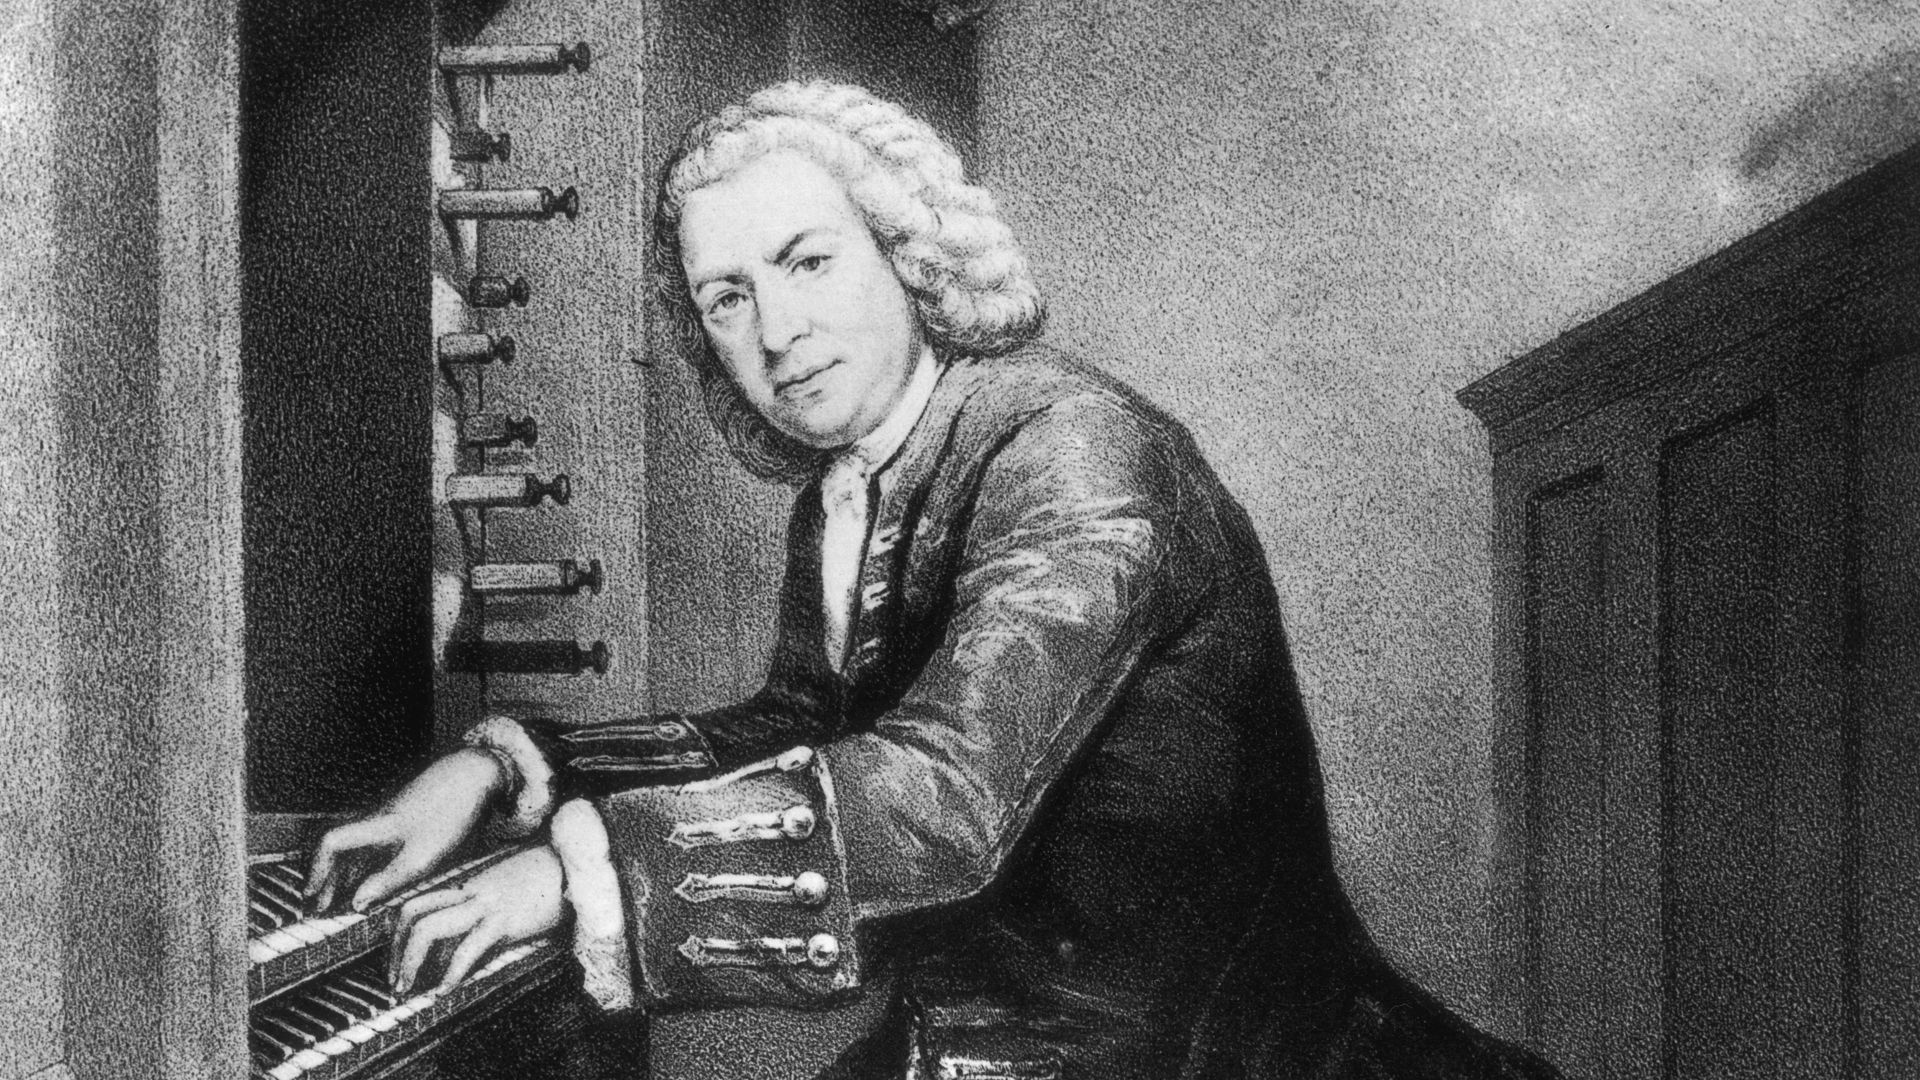 J.S. Bach: The Violin Concertos